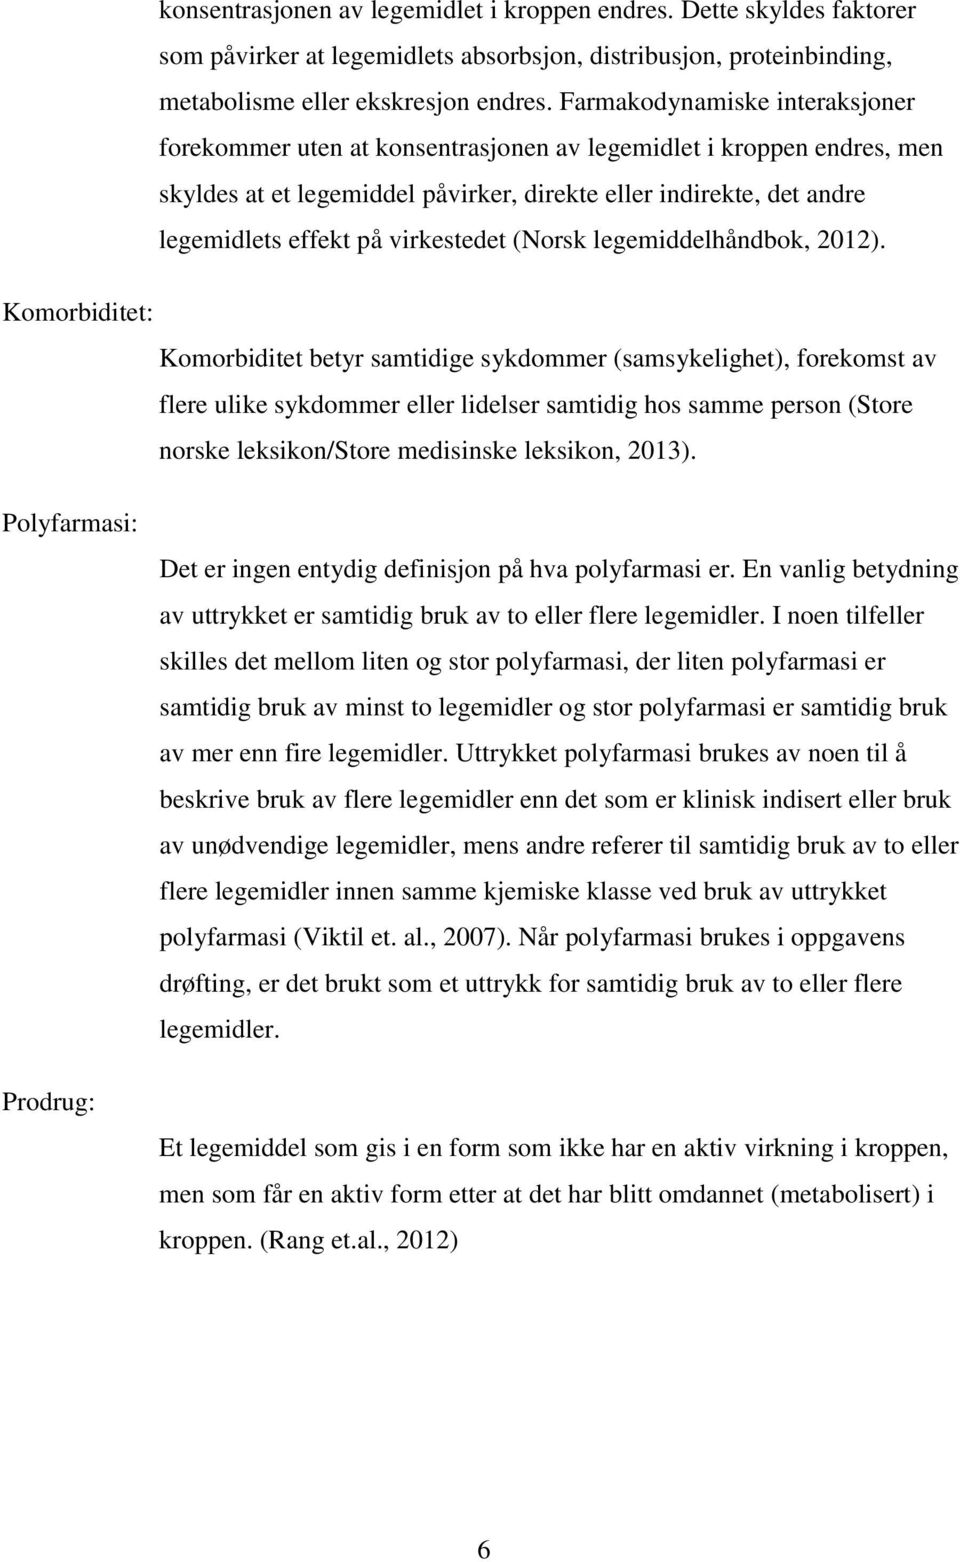 virkestedet (Norsk legemiddelhåndbok, 2012).